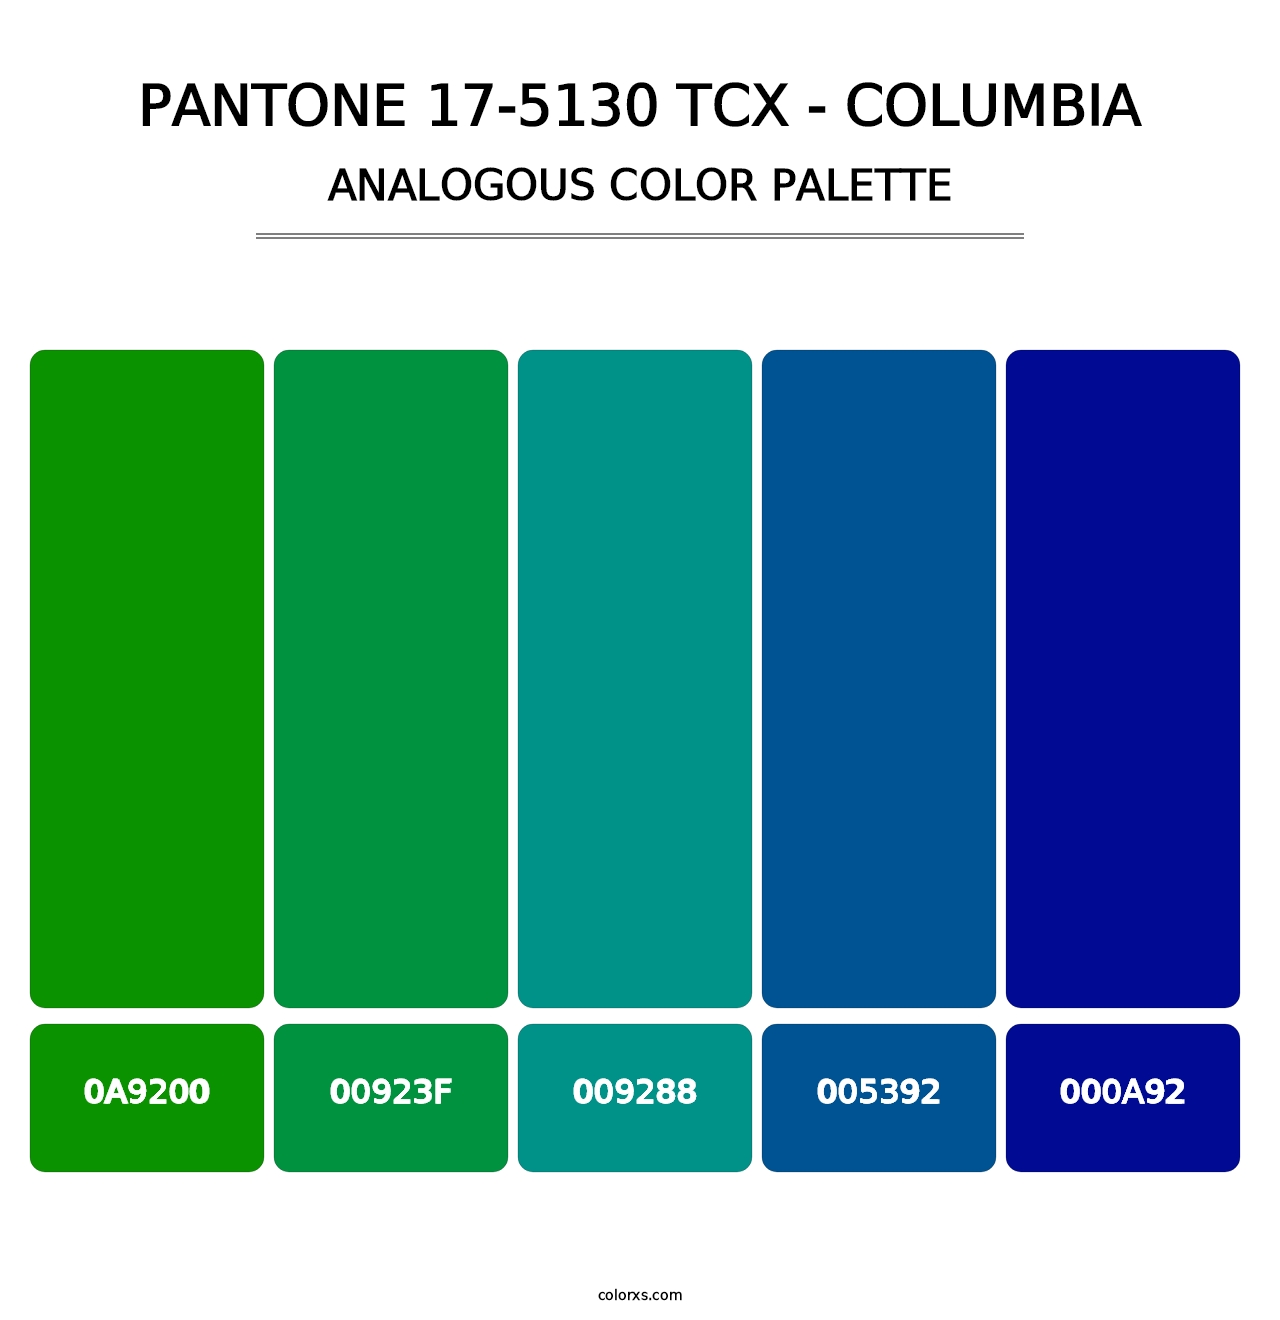 PANTONE 17-5130 TCX - Columbia - Analogous Color Palette